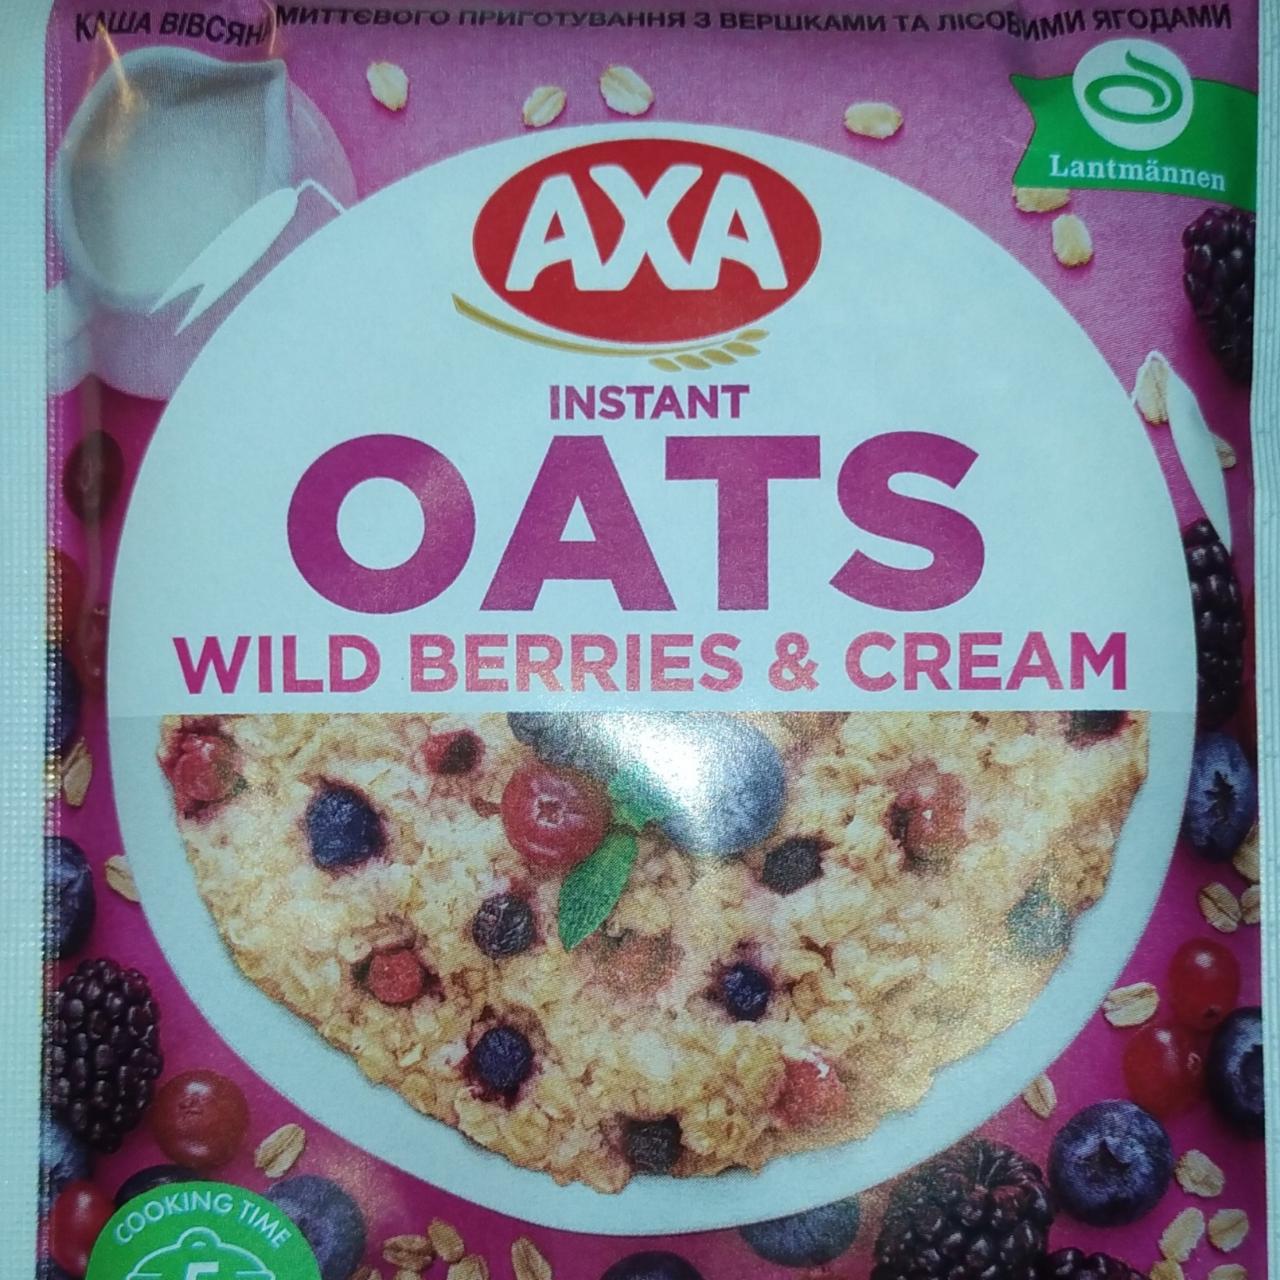 Фото - Oats wild berries and cream каша овсяная быстрого приготовления со сливками и лесными ягодами Axa